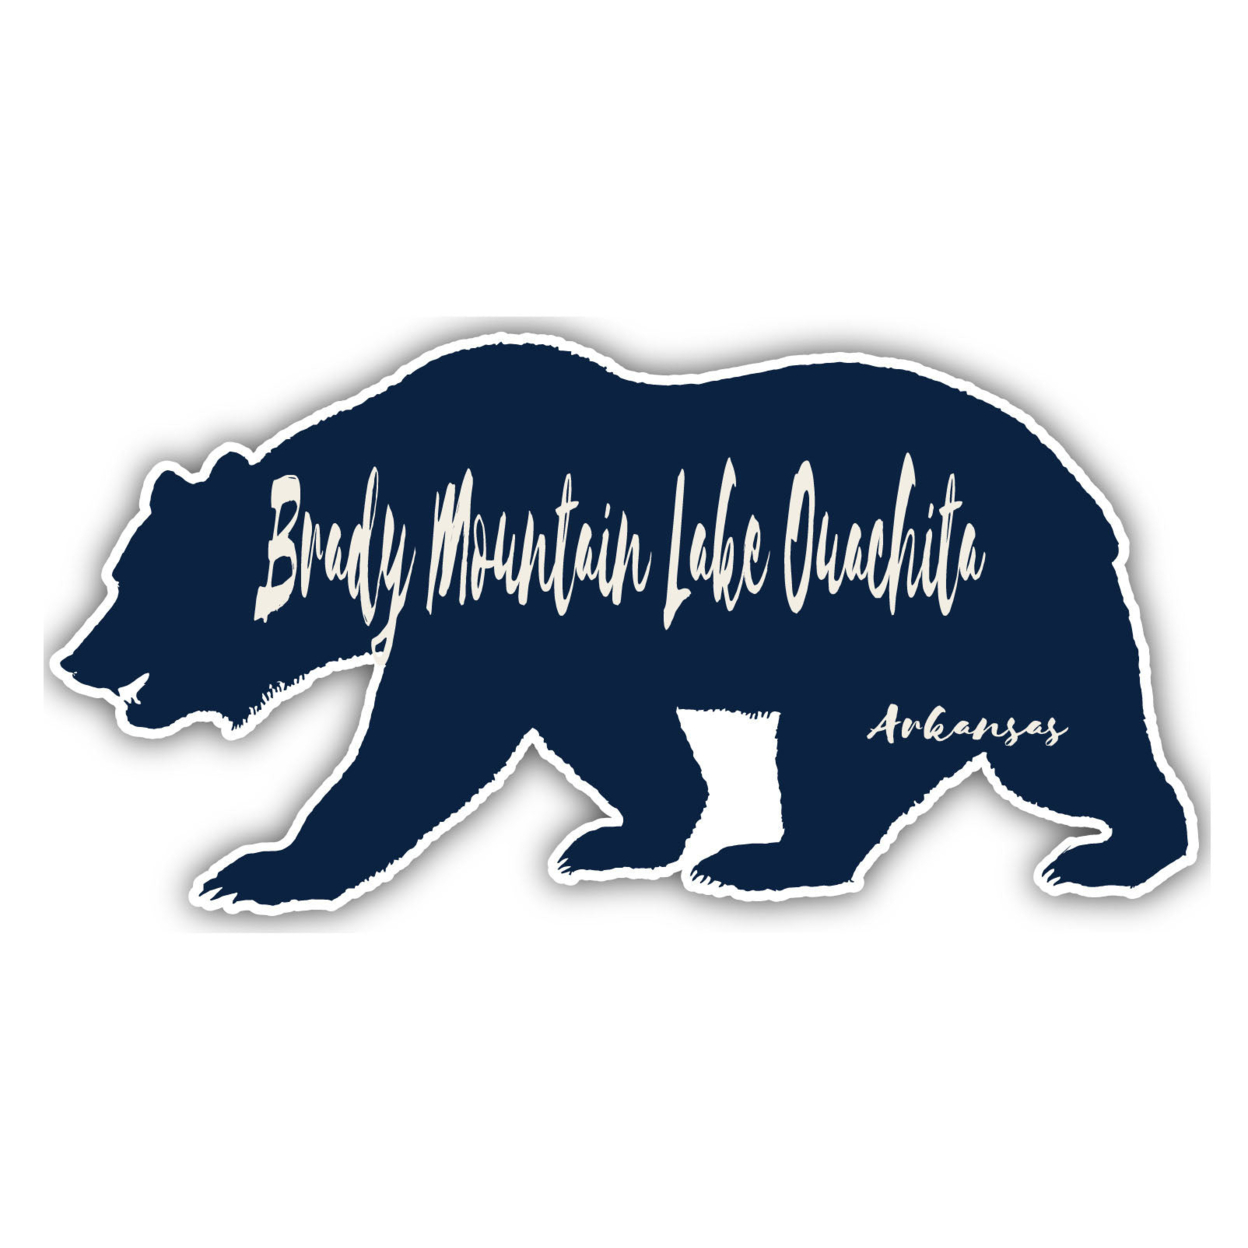 Brady Mountain Lake Ouachita Arkansas Souvenir Decorative Stickers (Choose Theme And Size) - Single Unit, 2-Inch, Tent